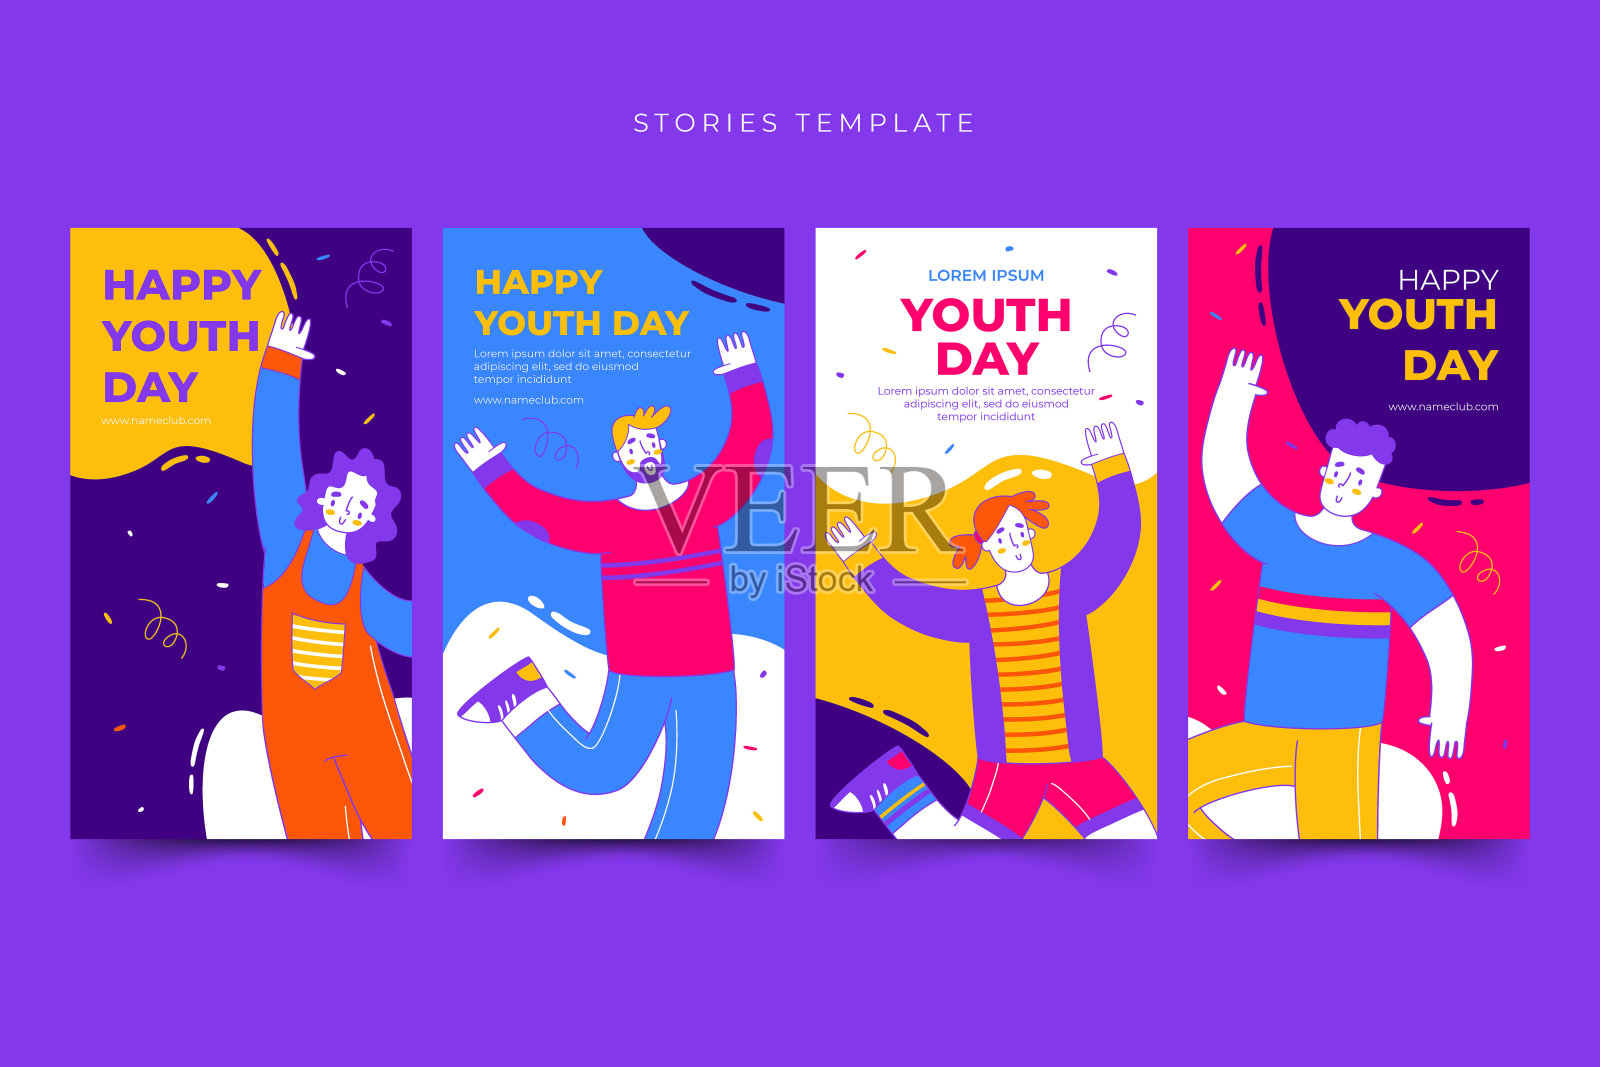 快乐国际青年日故事模板设计模板素材